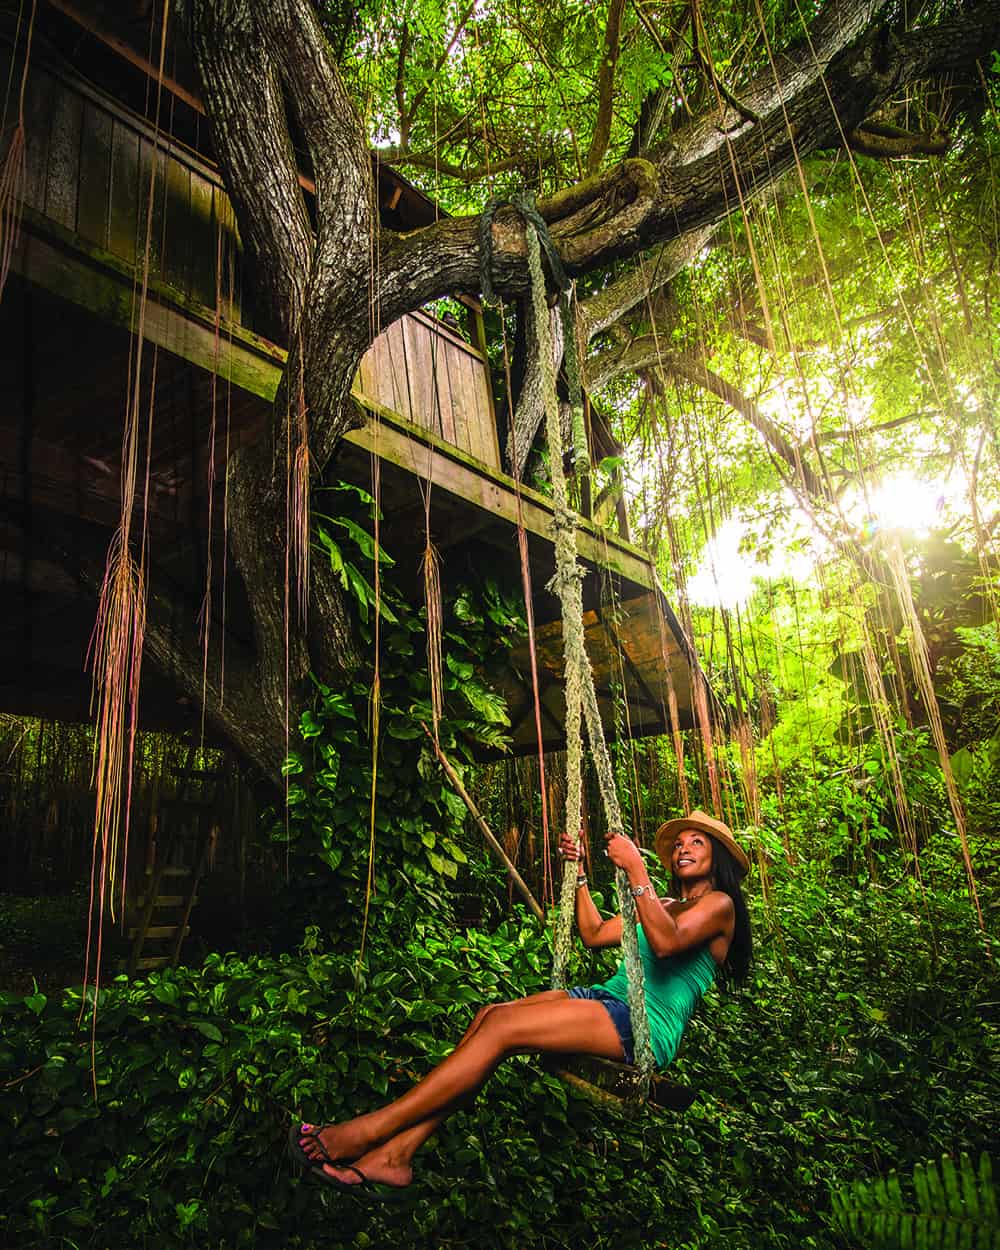 St. Croix’s rainforest